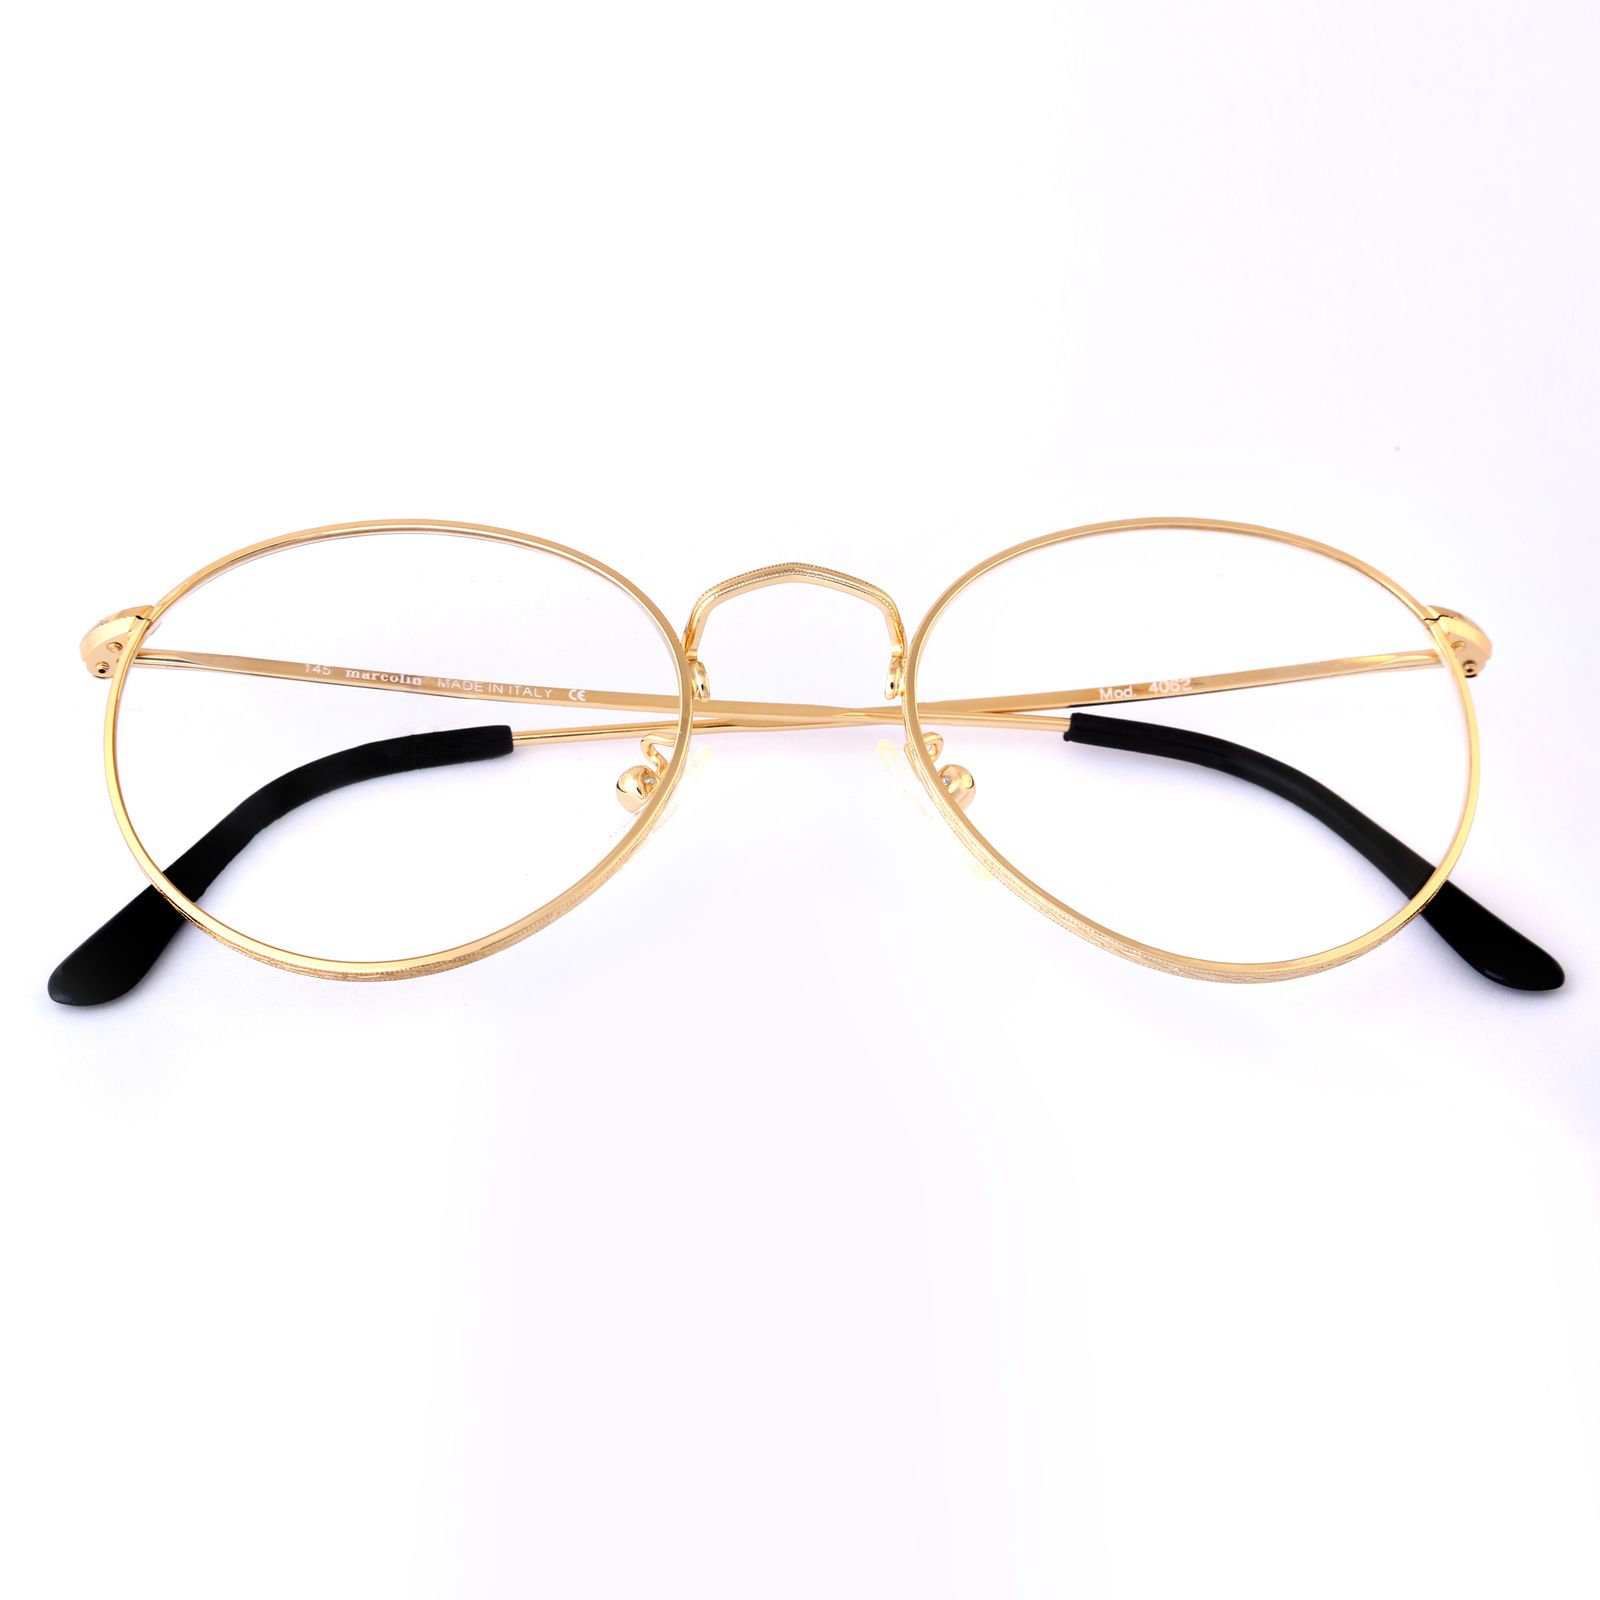 فریم عینک طبی بچگانه مارکولین مدل 4062 -  - 4